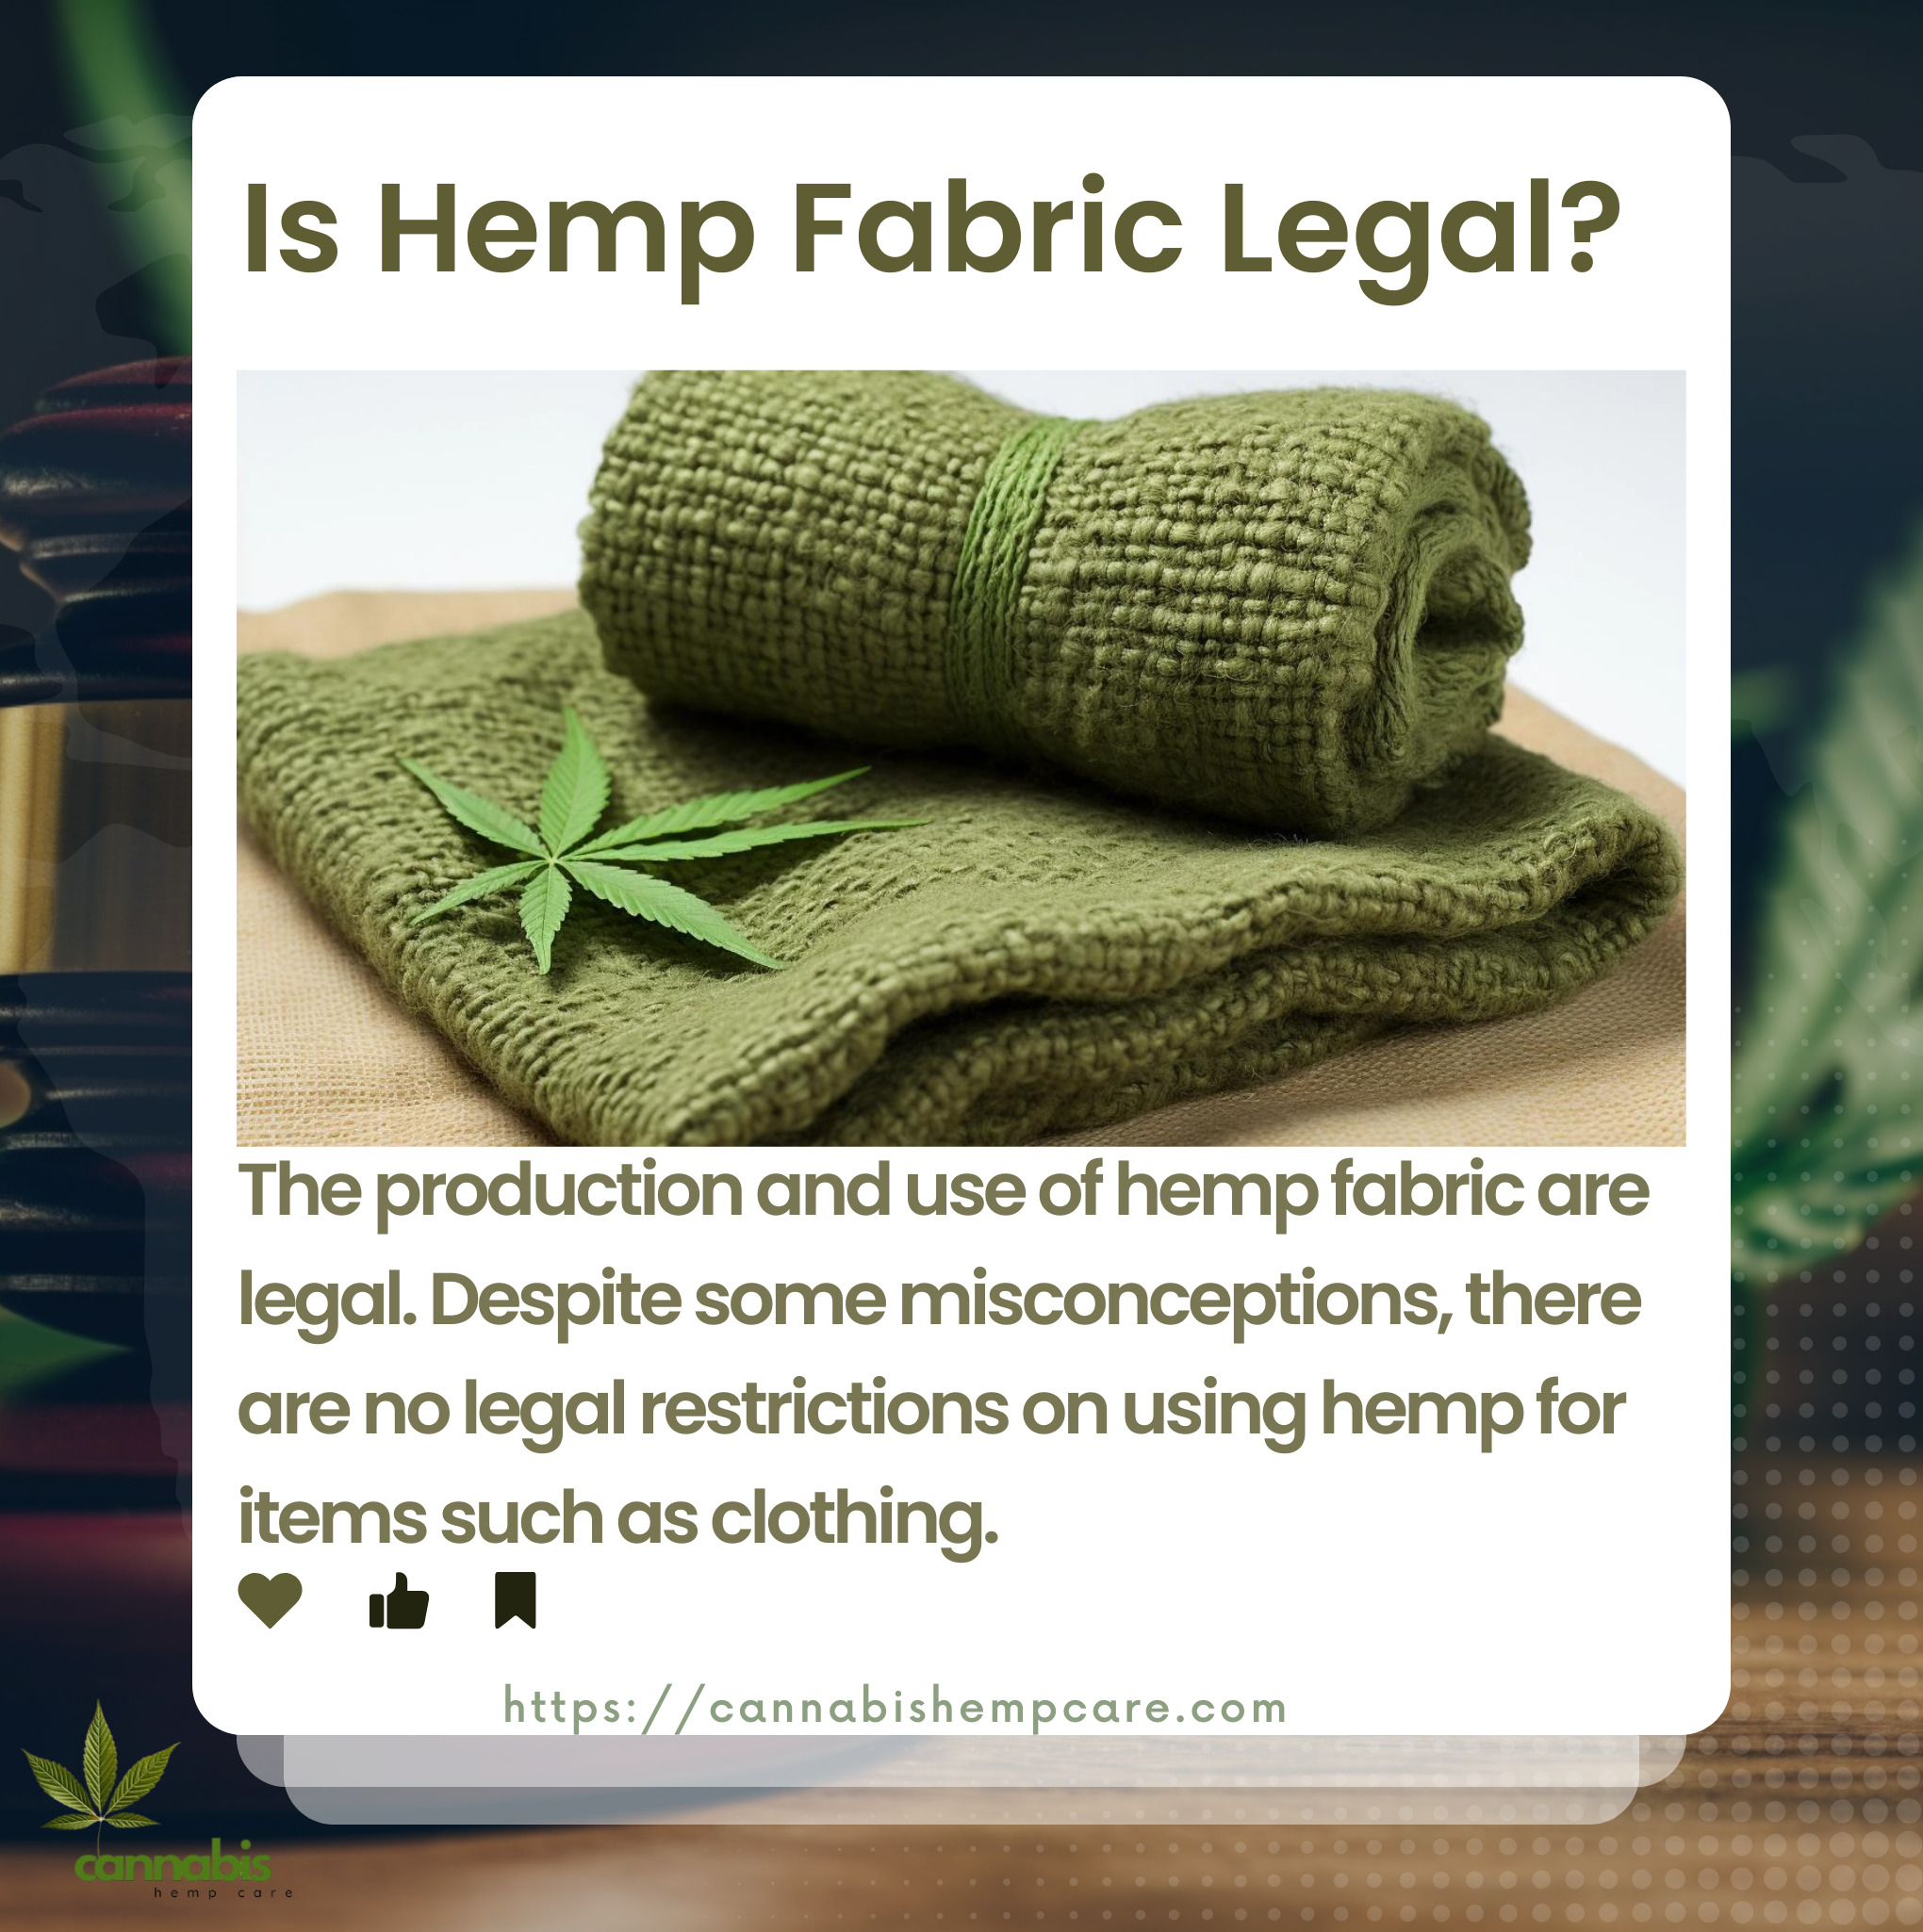 legality of hemp fabric